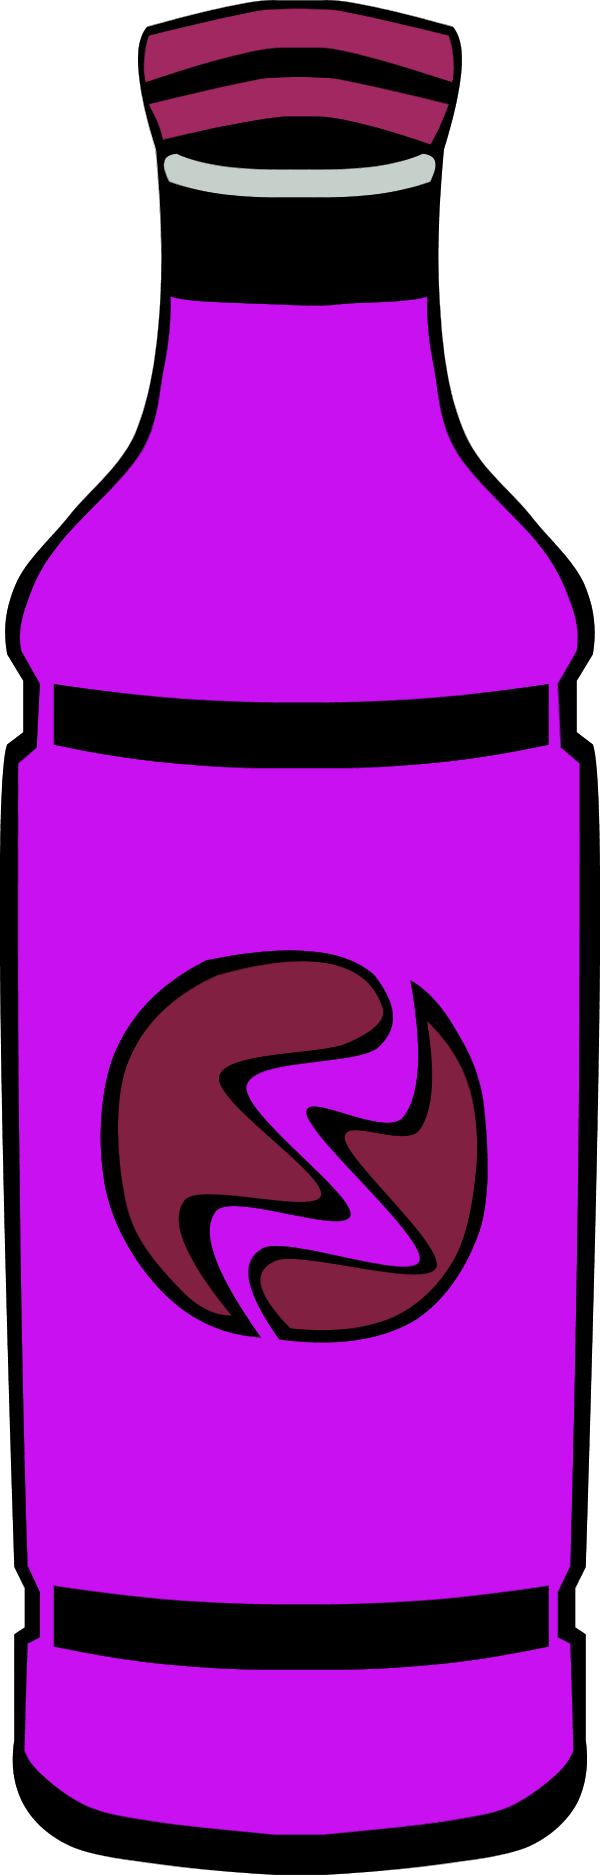 Juice Bottle Clipart 5 - Juice Bottle Clipart 5 (600x1875)